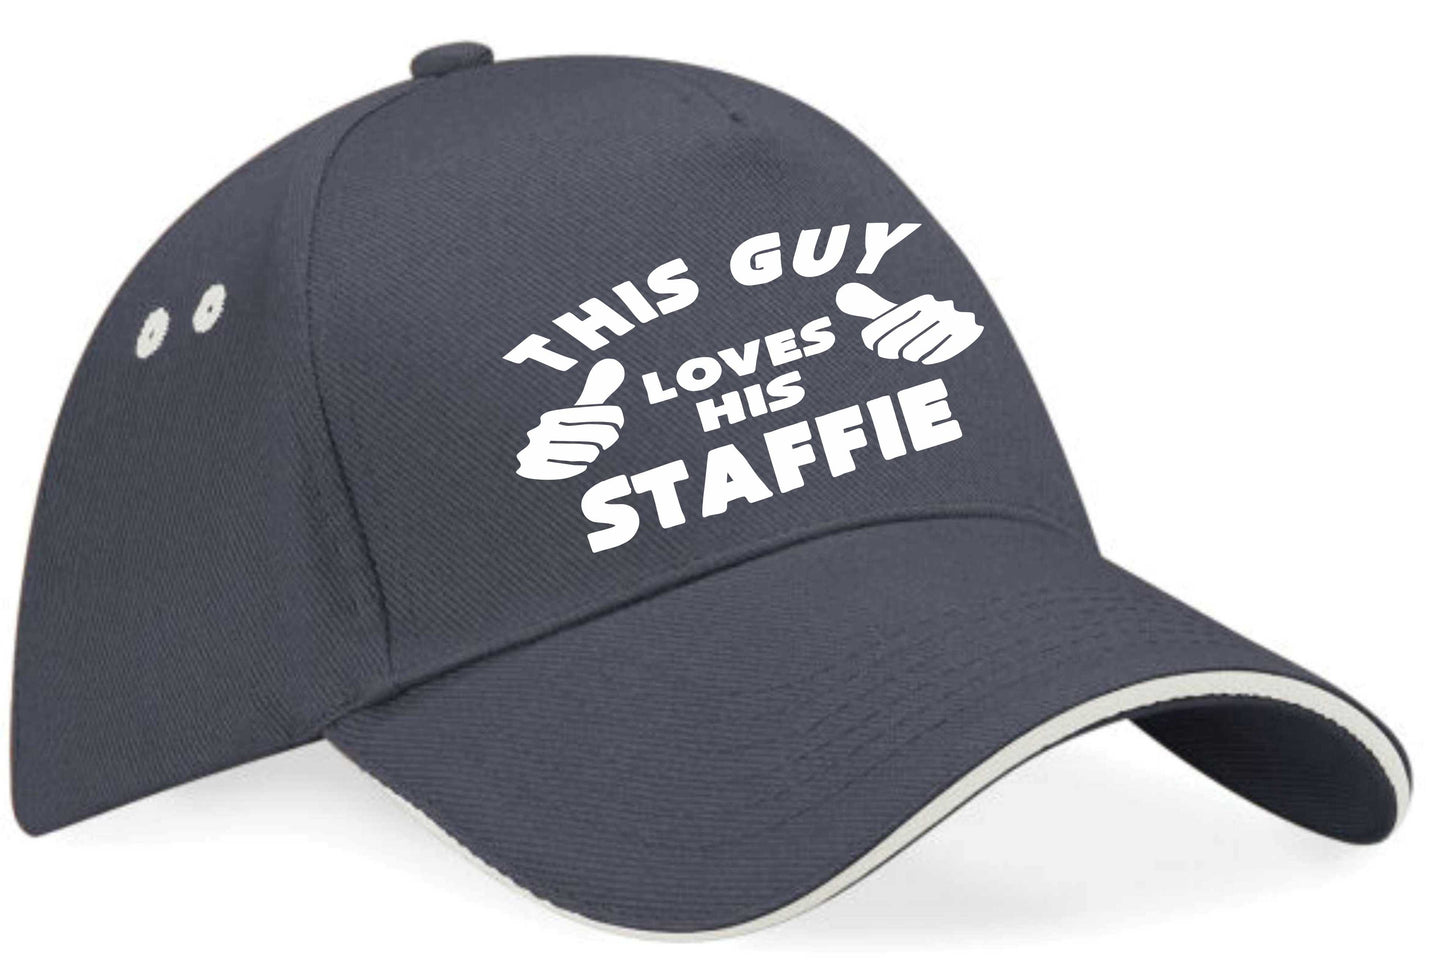 This Guy Loves His Staffie Baseball Cap Dog Lover Birthday Gift For Men